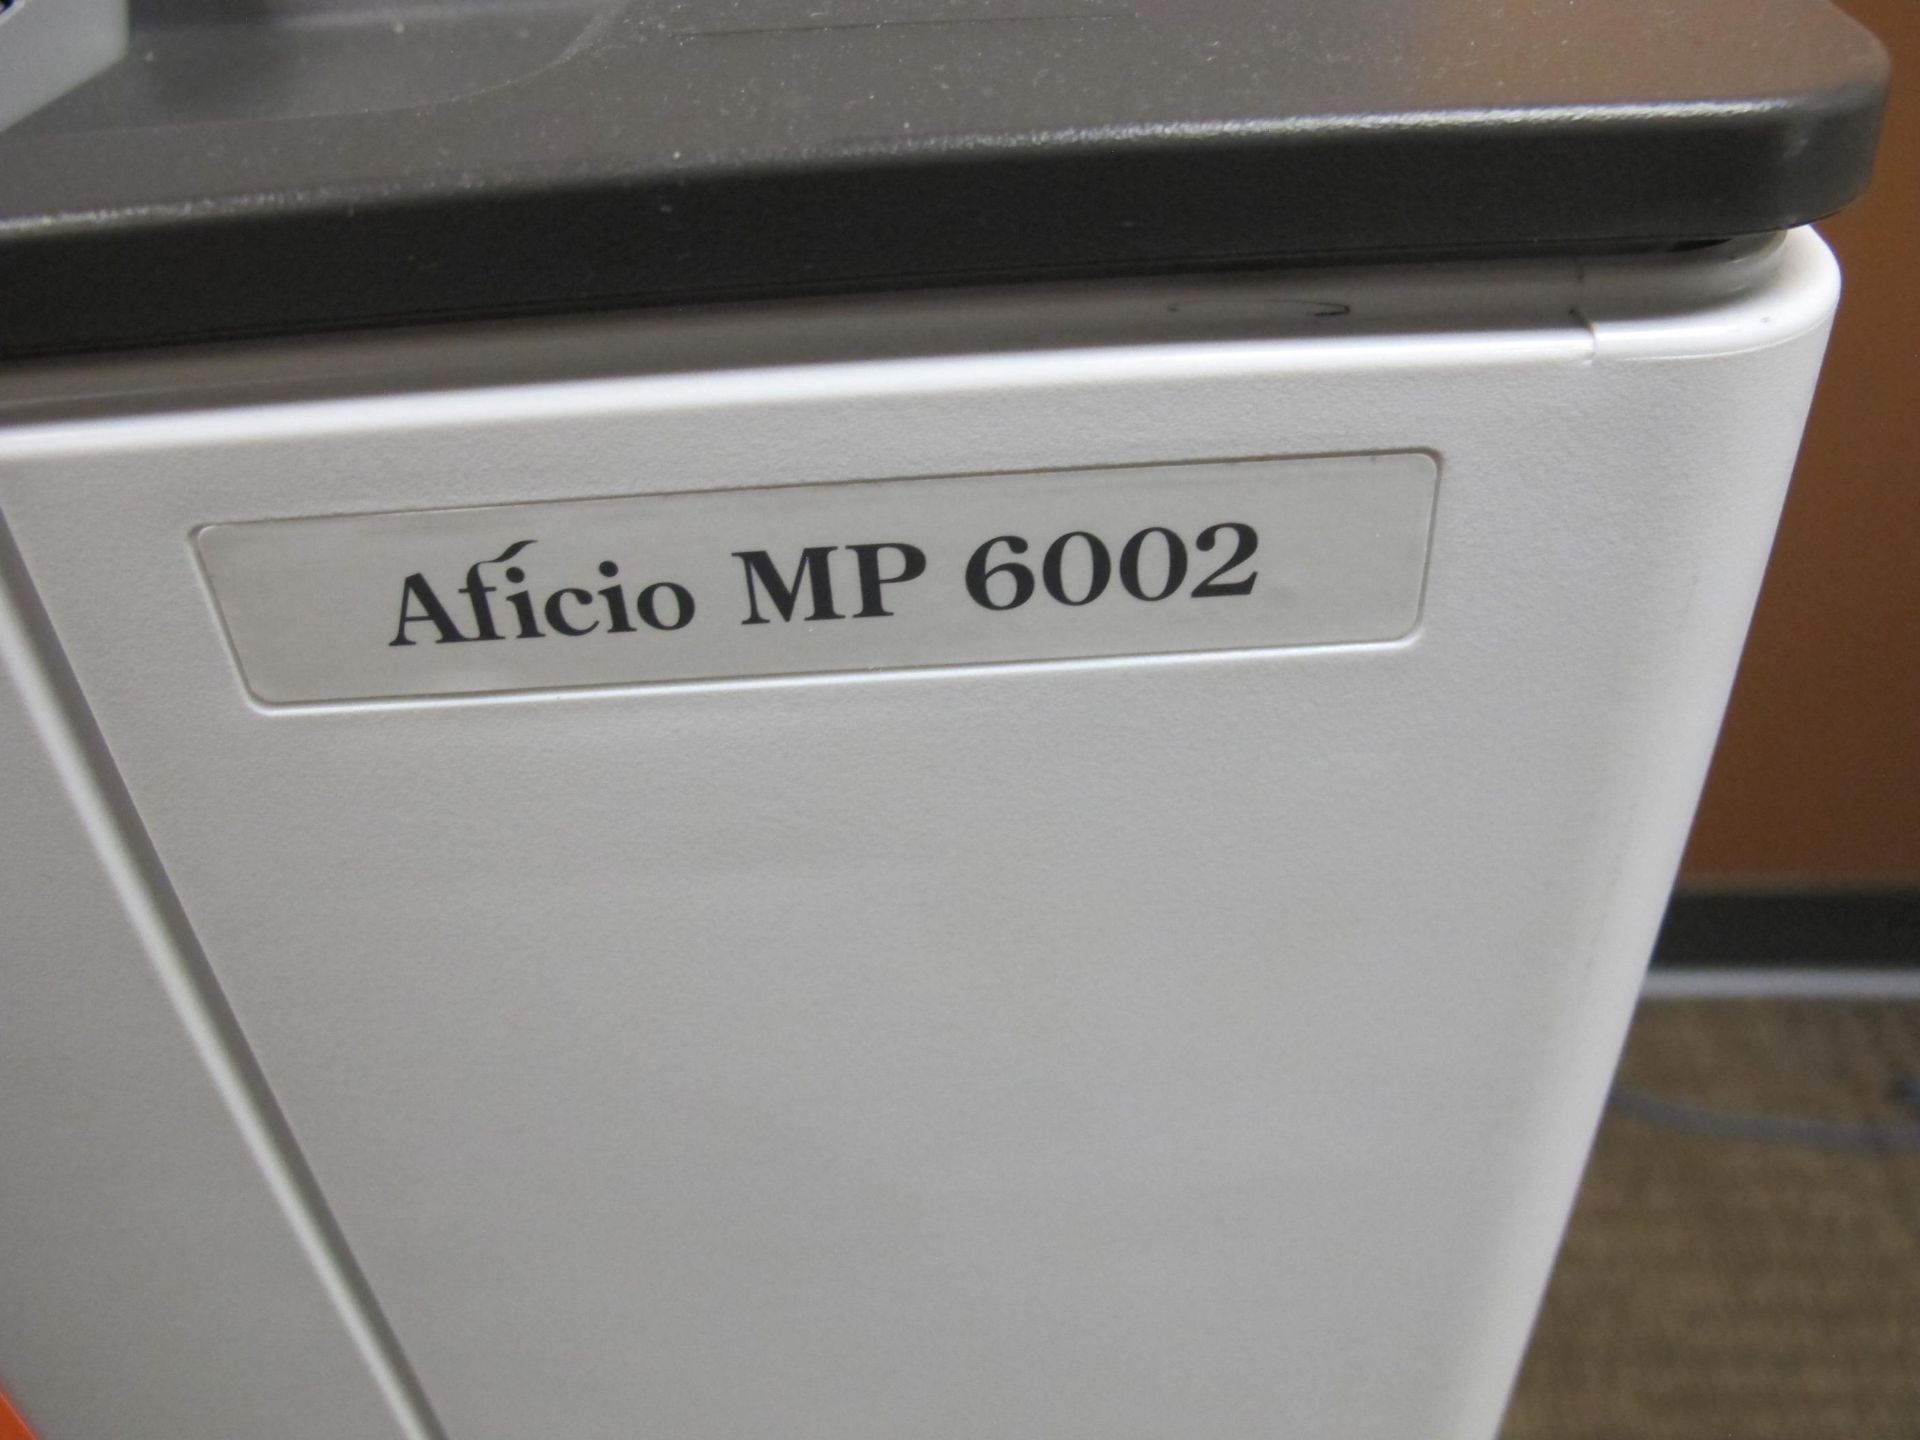 Ricoh Aticio MP 6002 Copier - Image 3 of 3